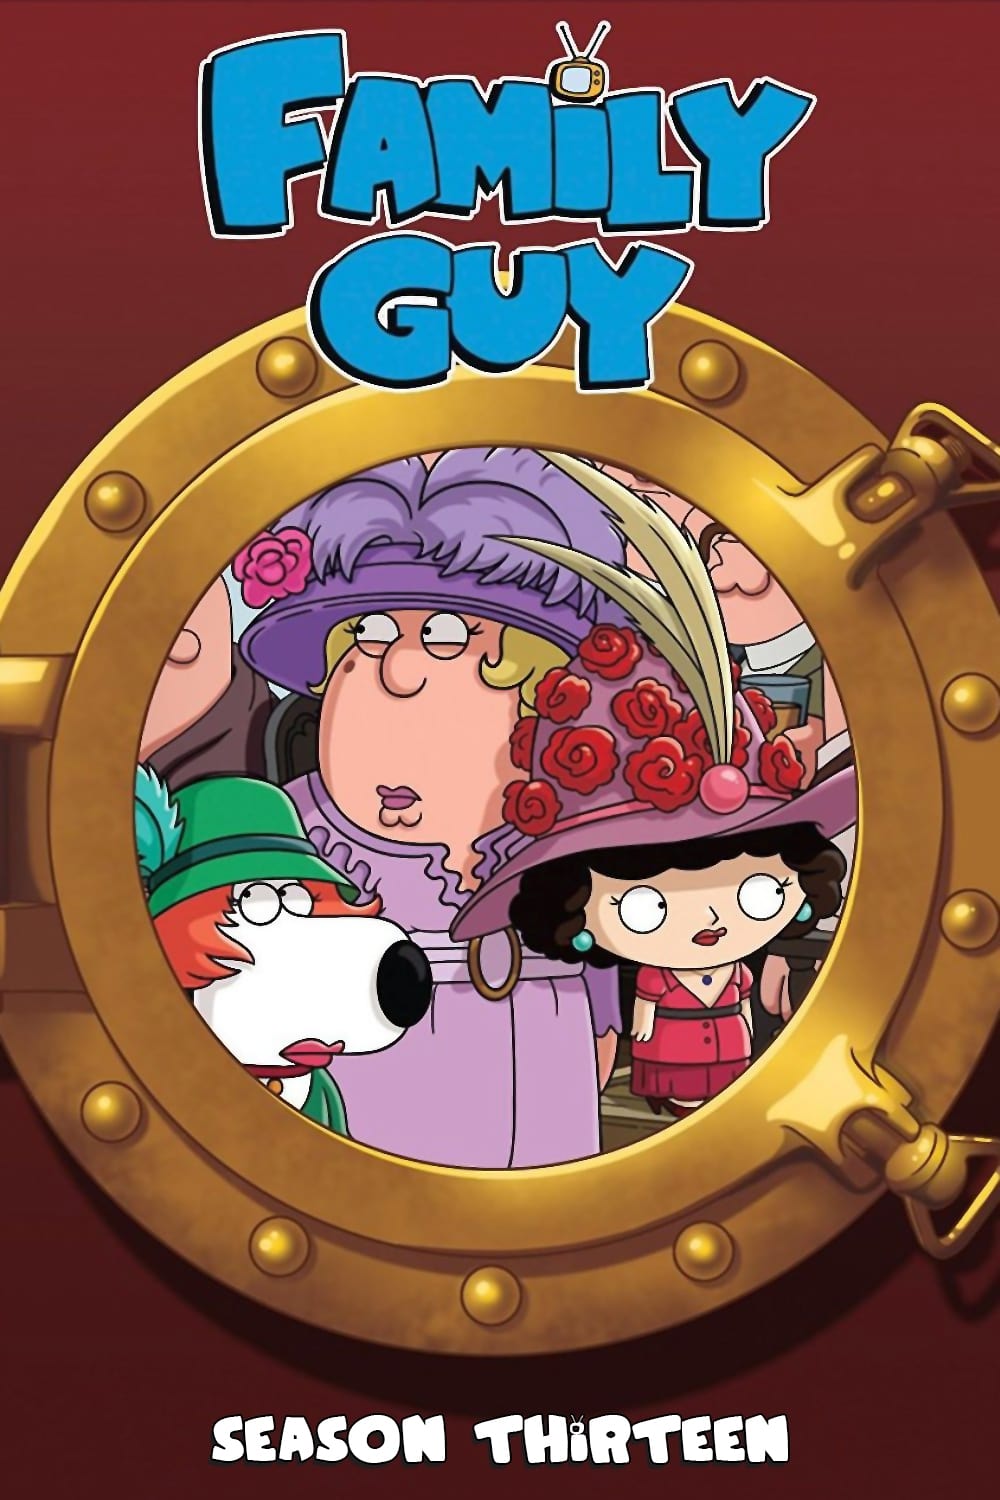 مشاهدة انمي Family Guy موسم 13 حلقة 3